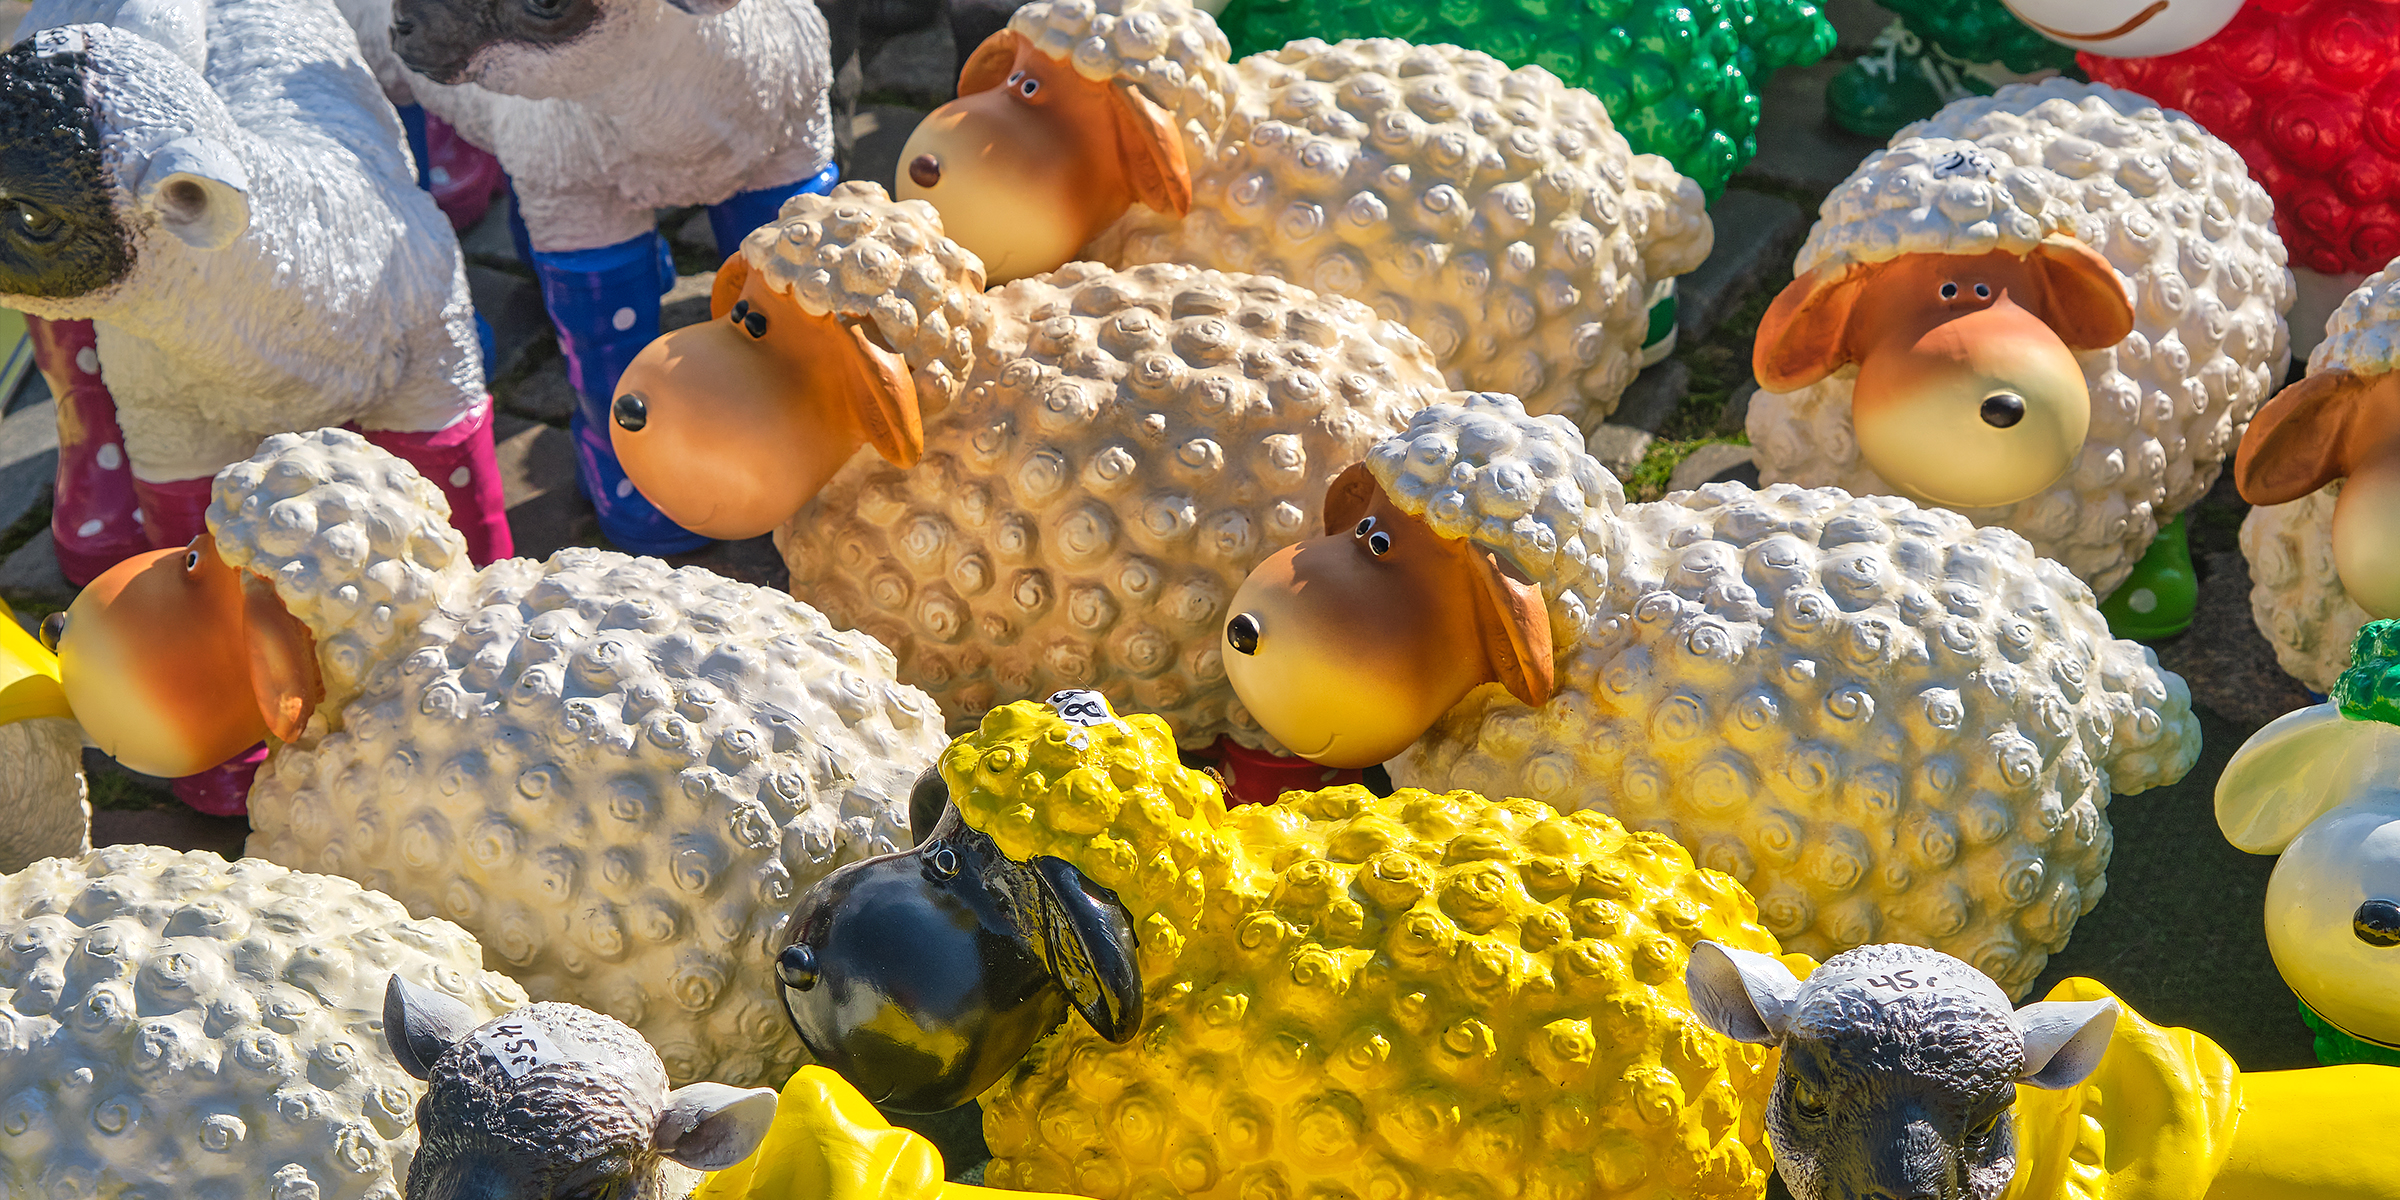 Collection de moutons en plastique | Source : Getty images